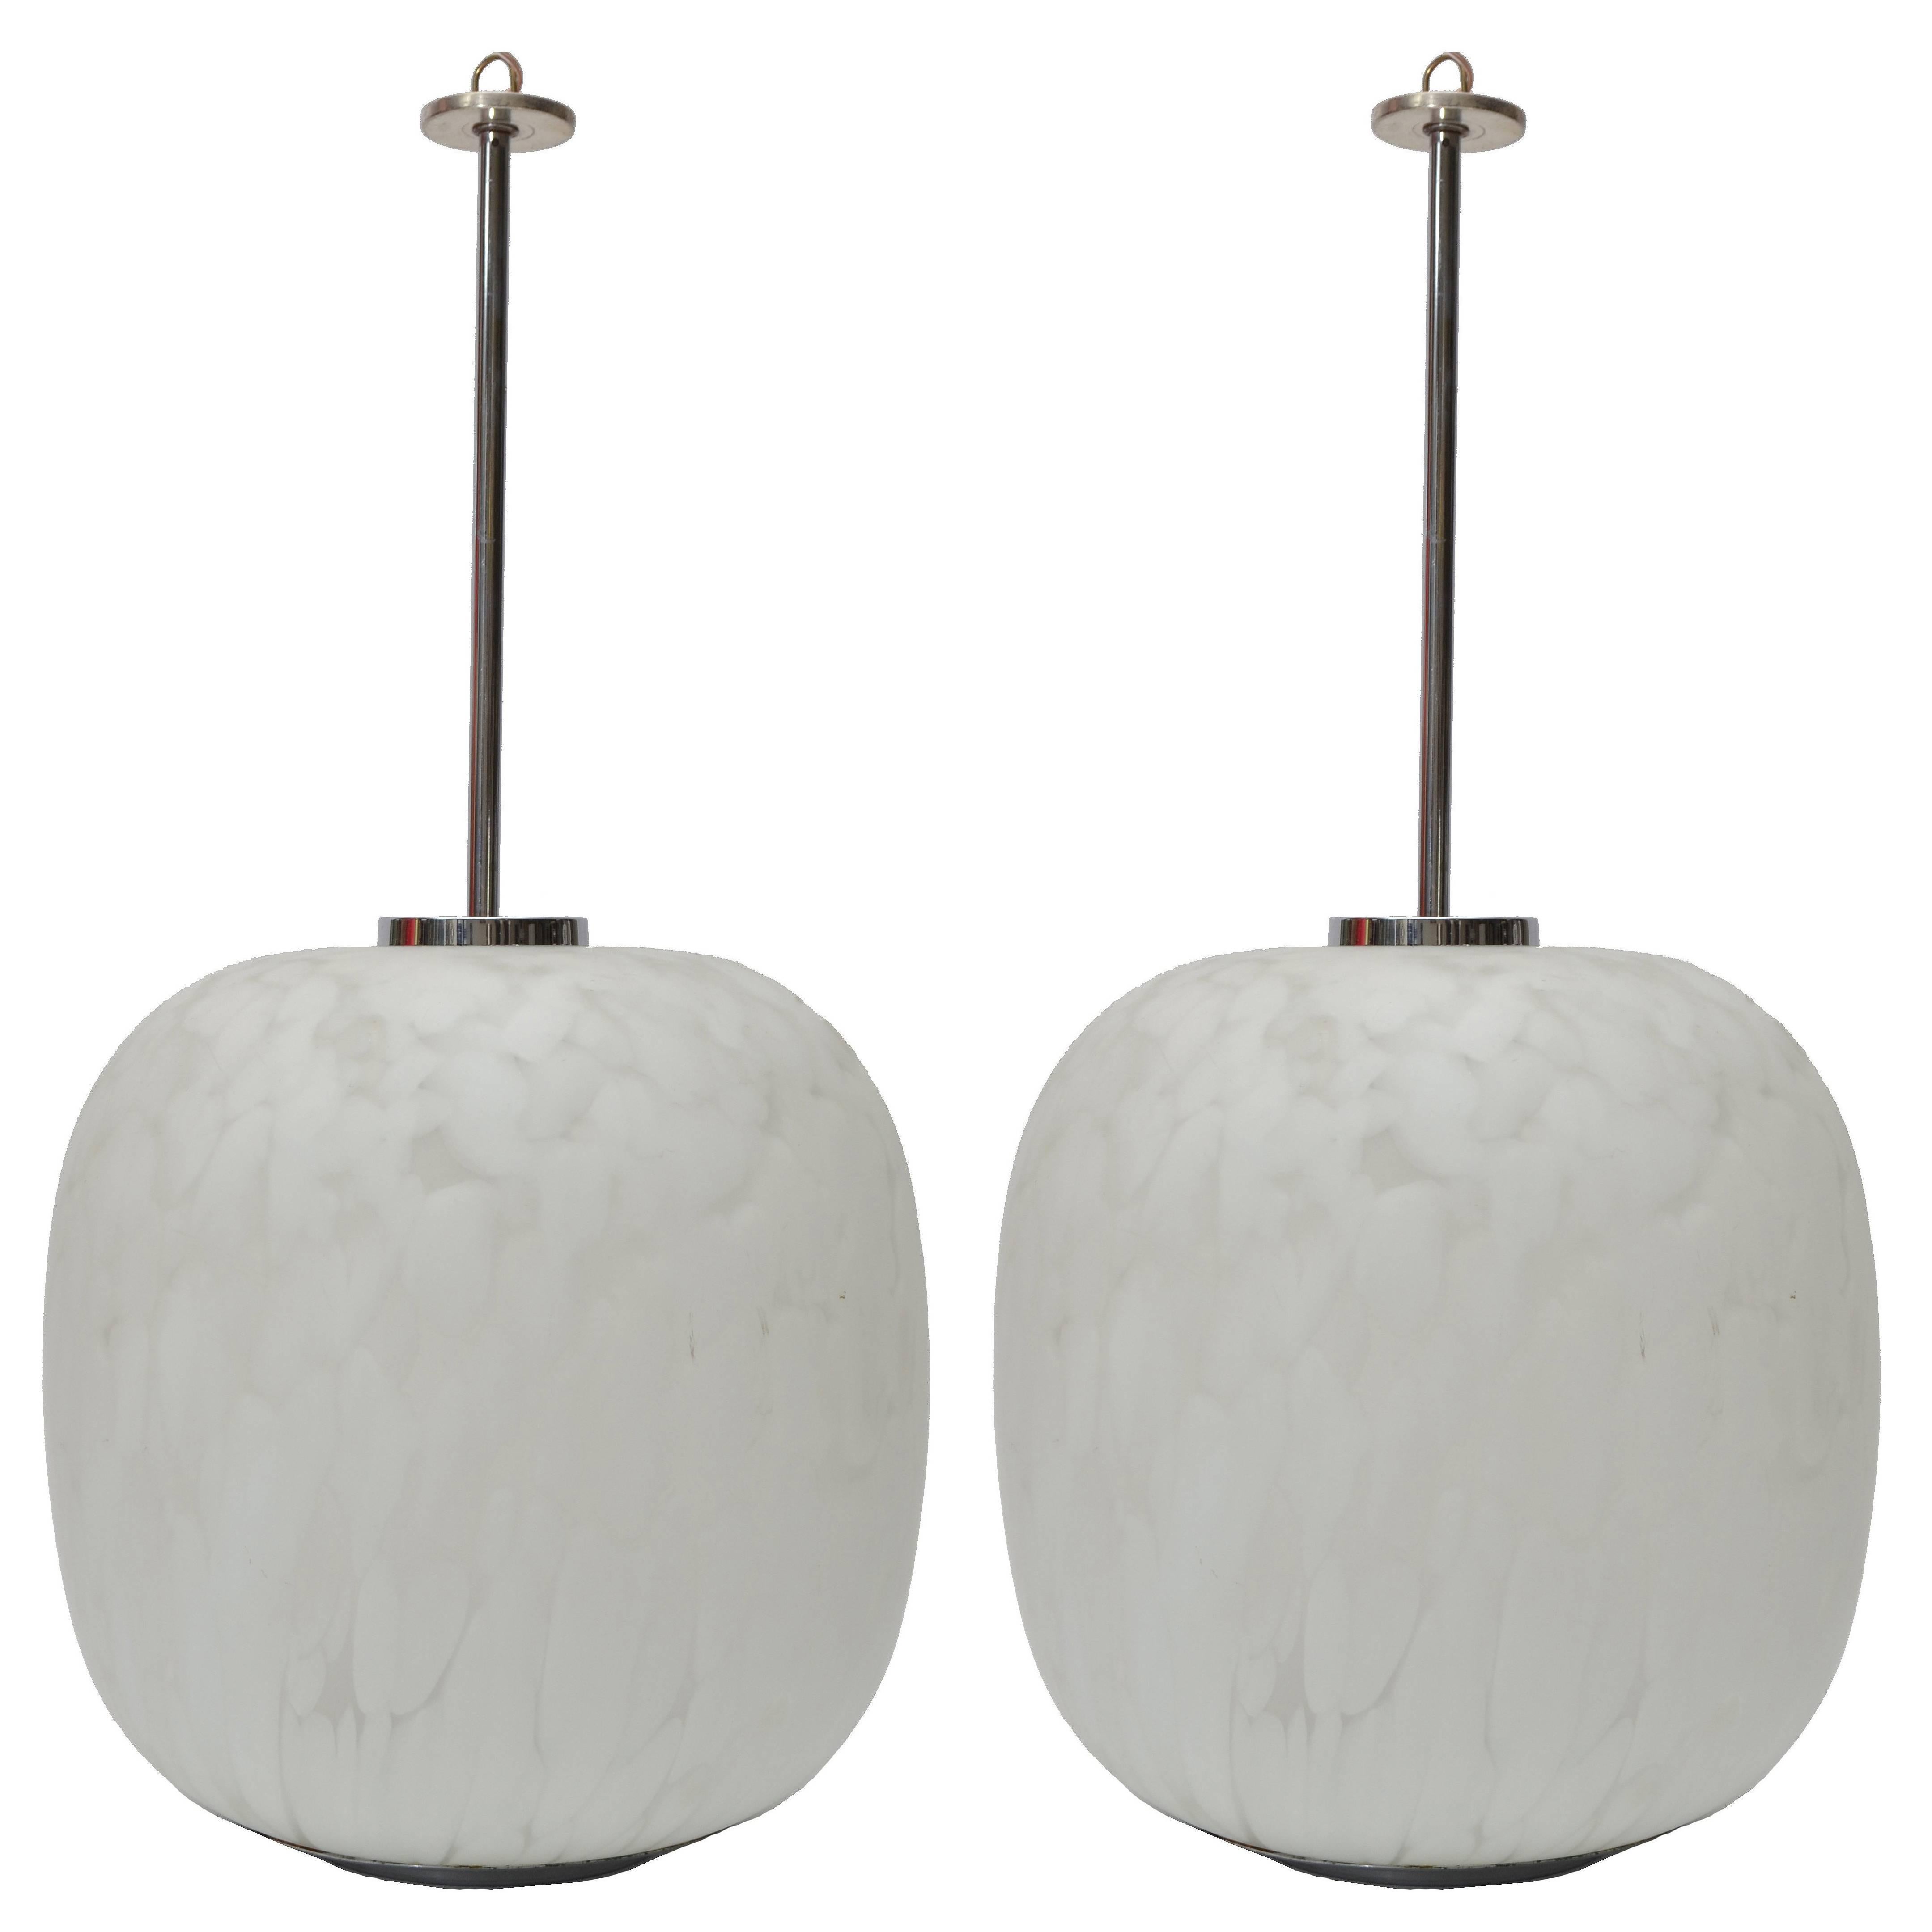 Mazzega Murano Attributed Pendant Lamp Mottled White Murano Glass, Pair